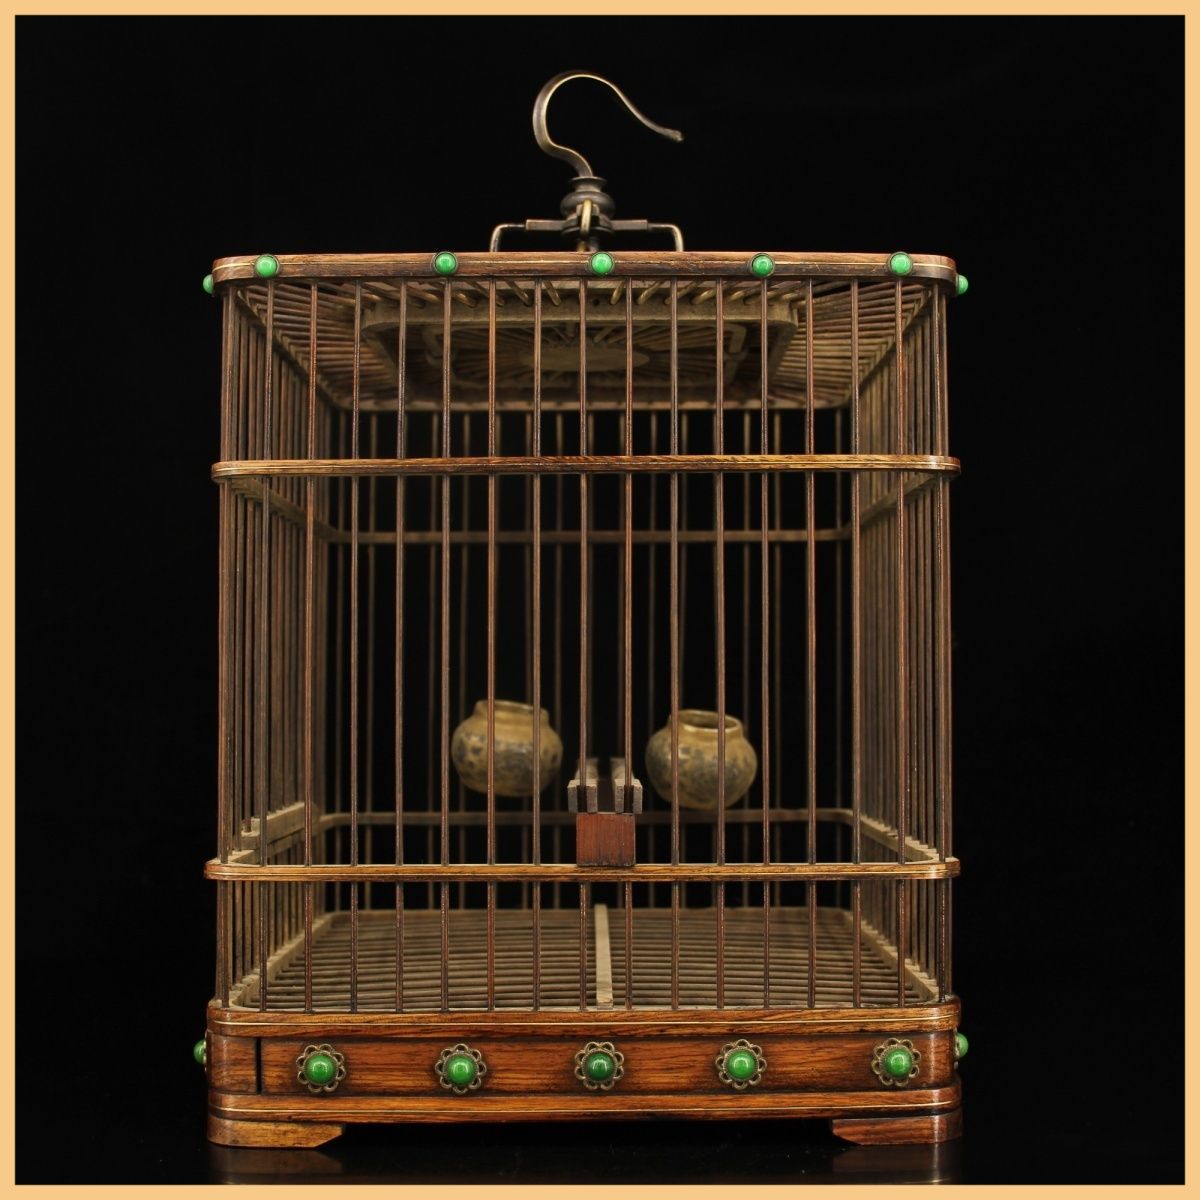 Lồng chim bằng gỗ được làm thủ công, cao 40 cm, rộng 23 cm.